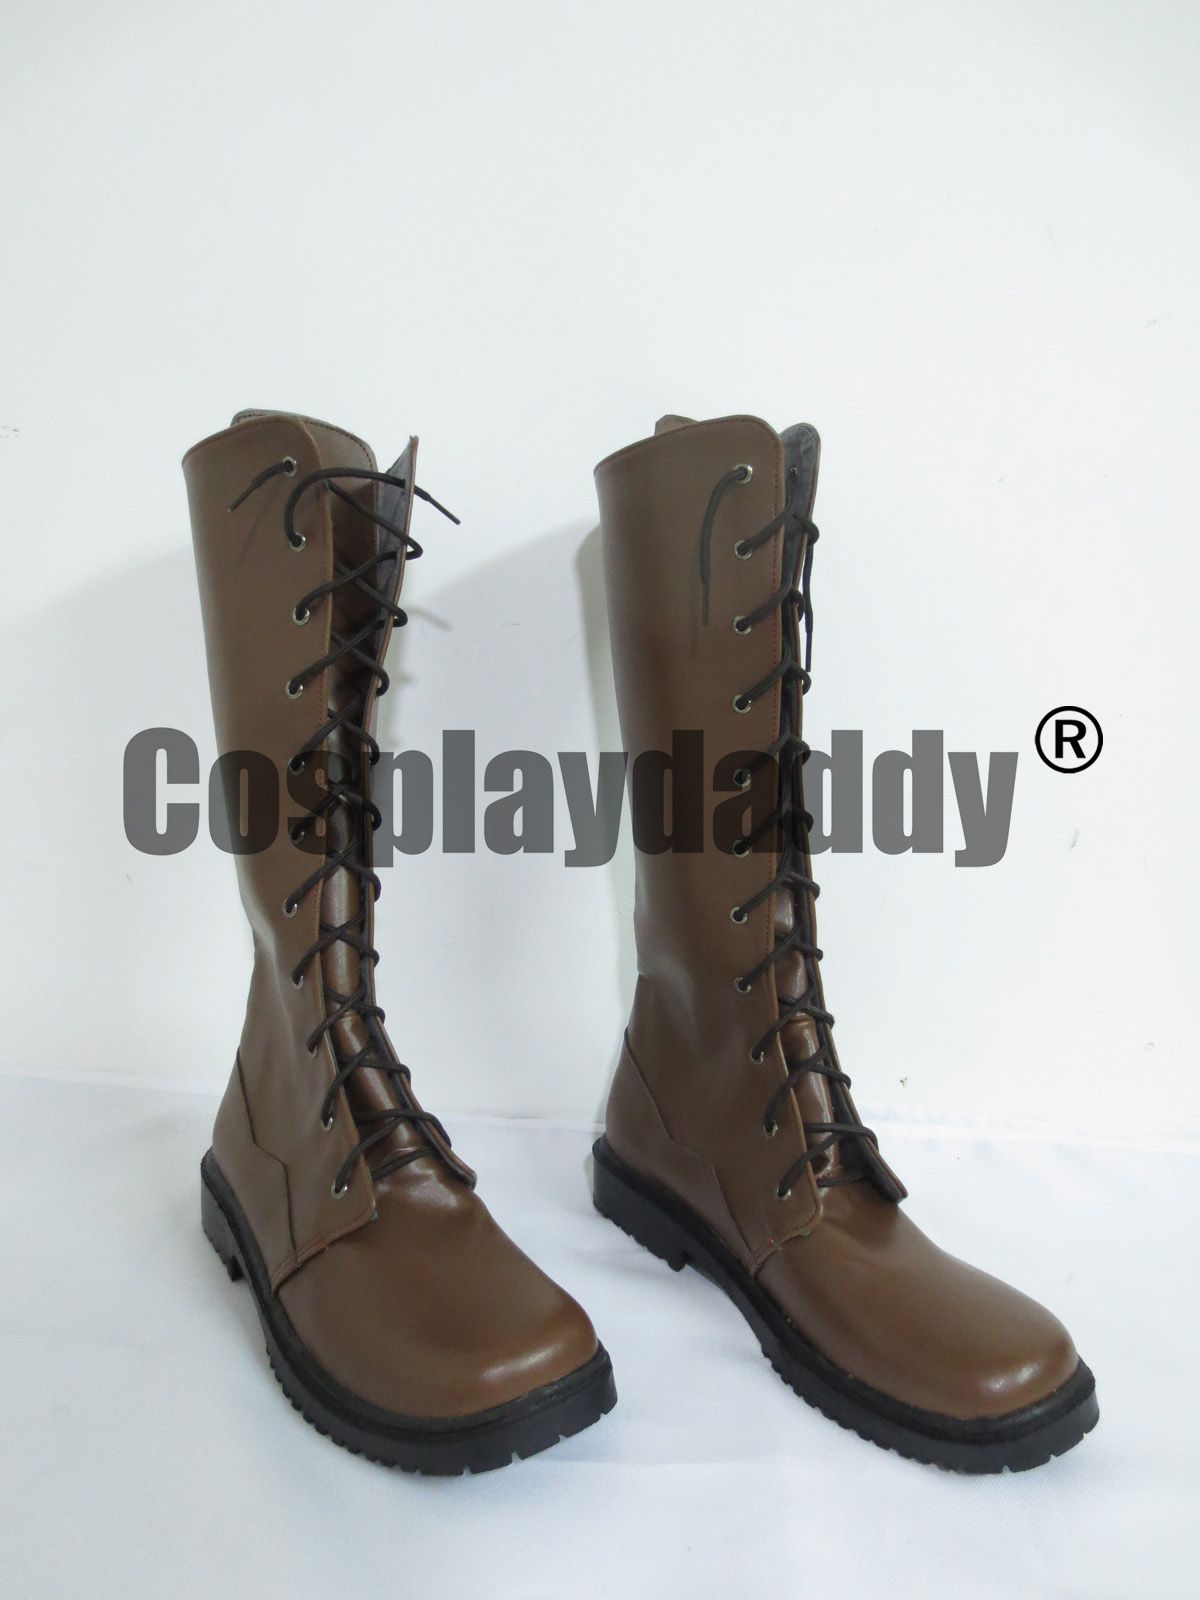 Future Diary Yukiteru Amano Cosplay Costume Boots Boot Shoes Shoe UK